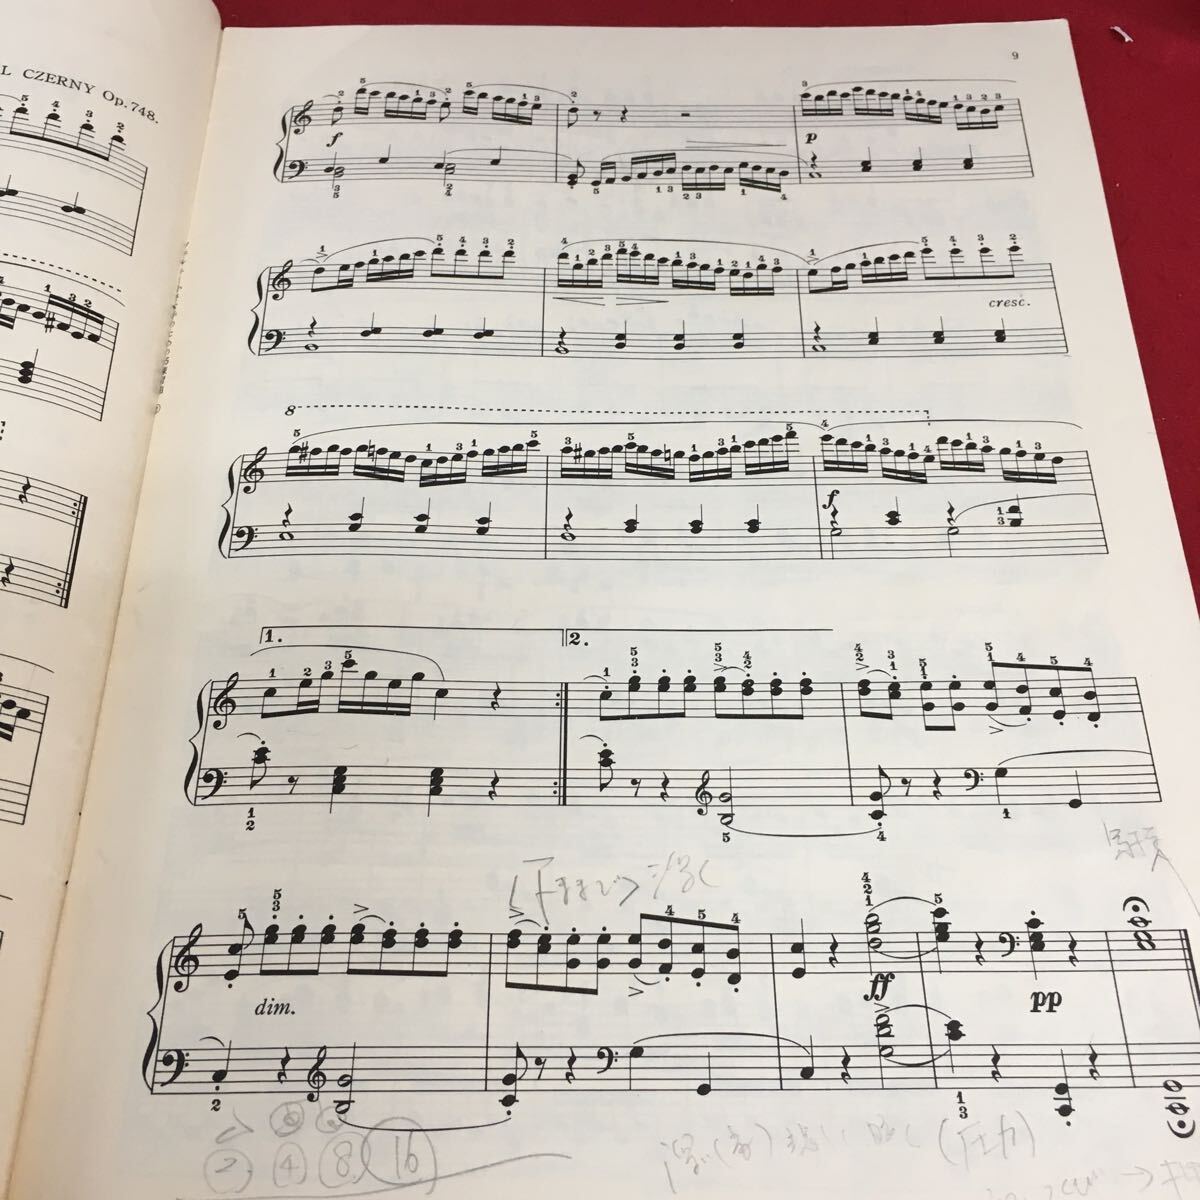 f-630 CZERNY ツェルニー 小さな手のための25の練習曲 ページ外れあり 発行年月日記載なし ※3 _書き込みあり